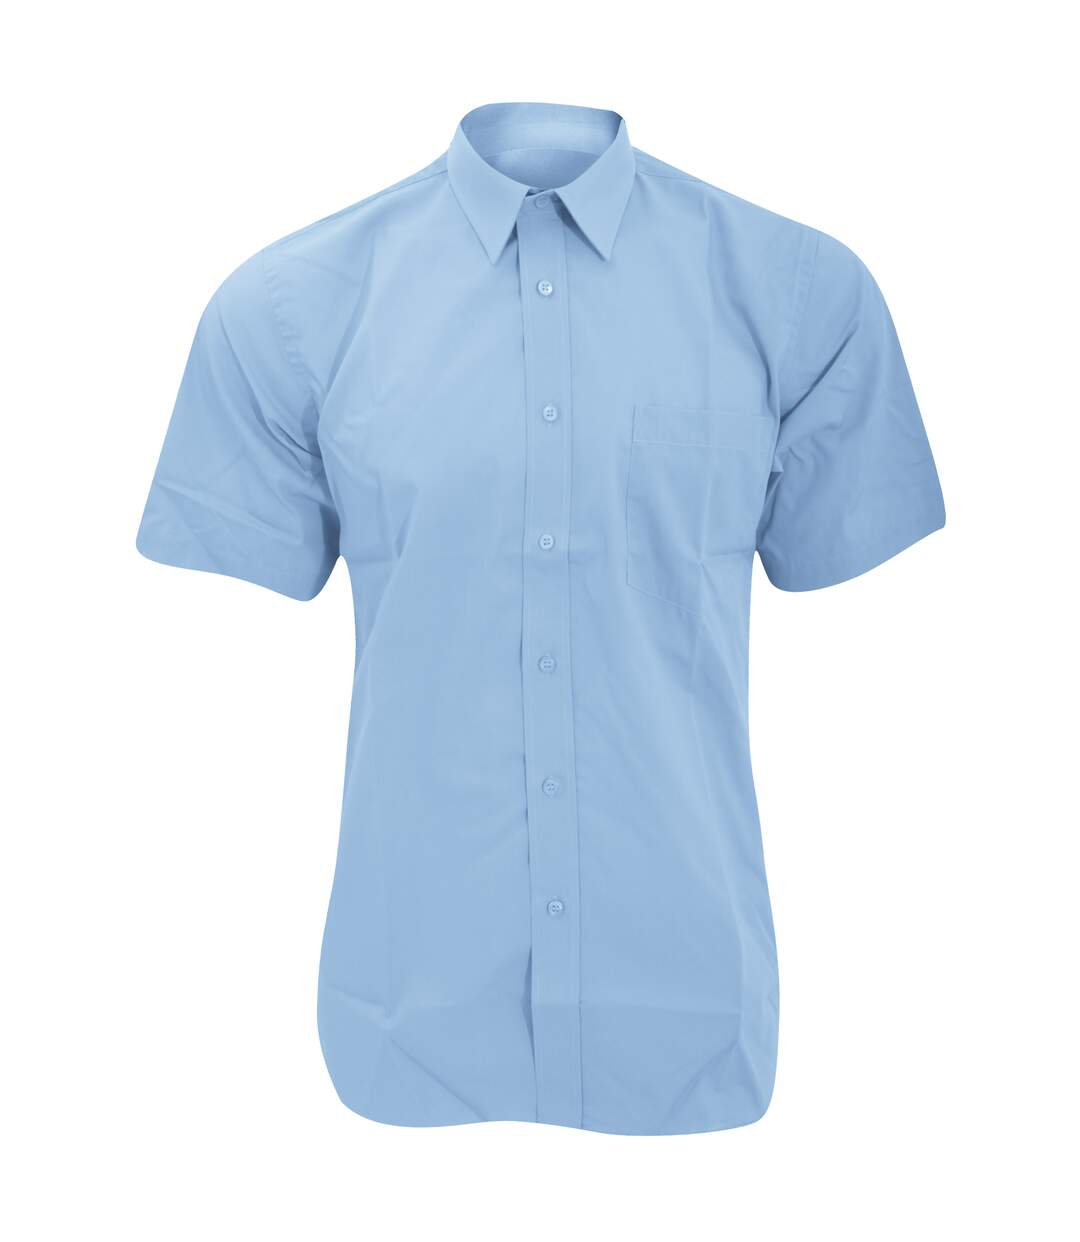 Fruit Of The Loom Mens Short Sleeve Poplin Shirt (Mid Blue) - UTBC404